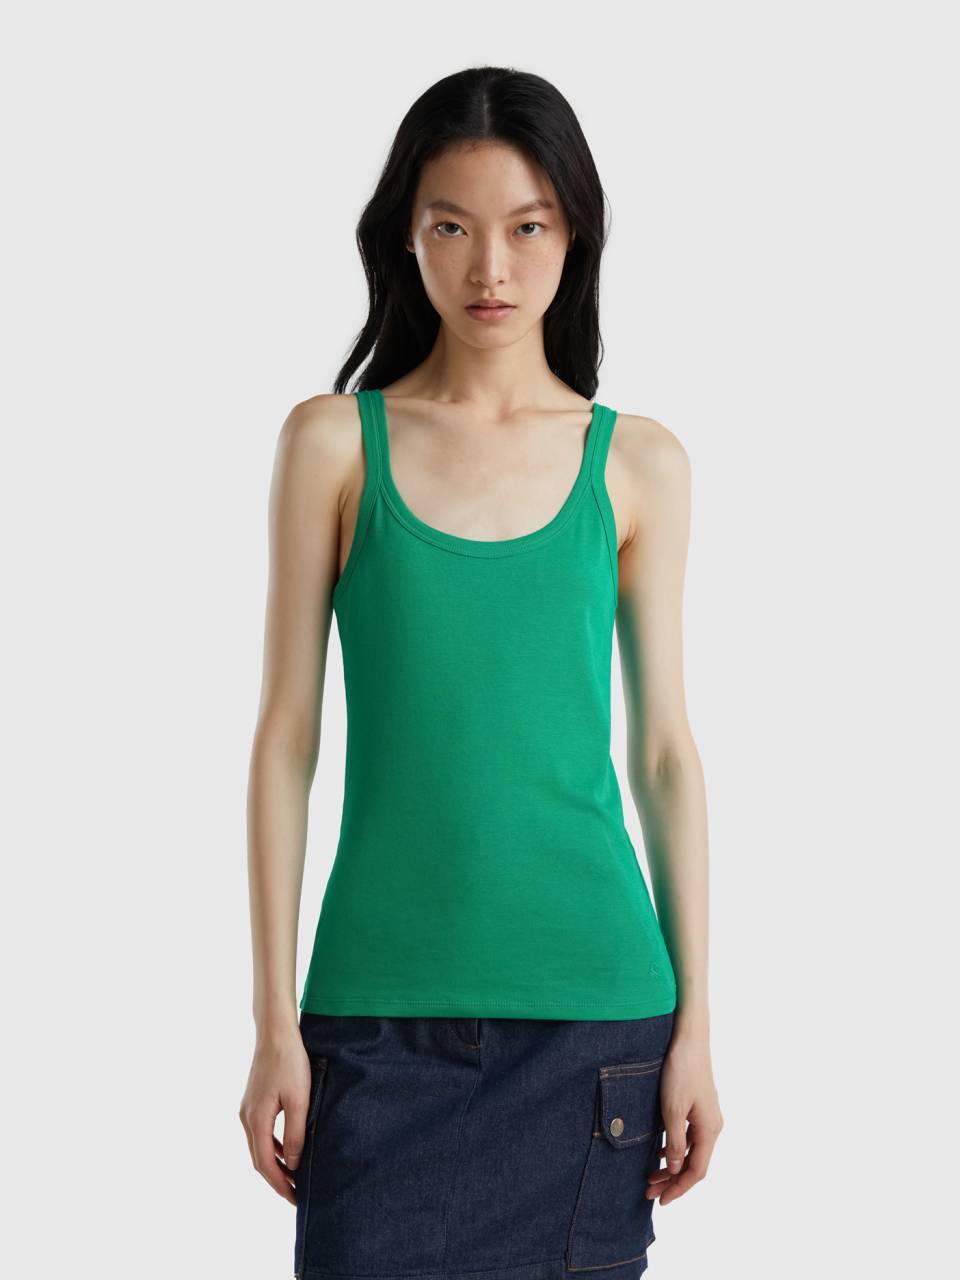 Buy TonyMax Premium Pure Cottonfor Women's - Size (S) Colour (Bottle Green)  at